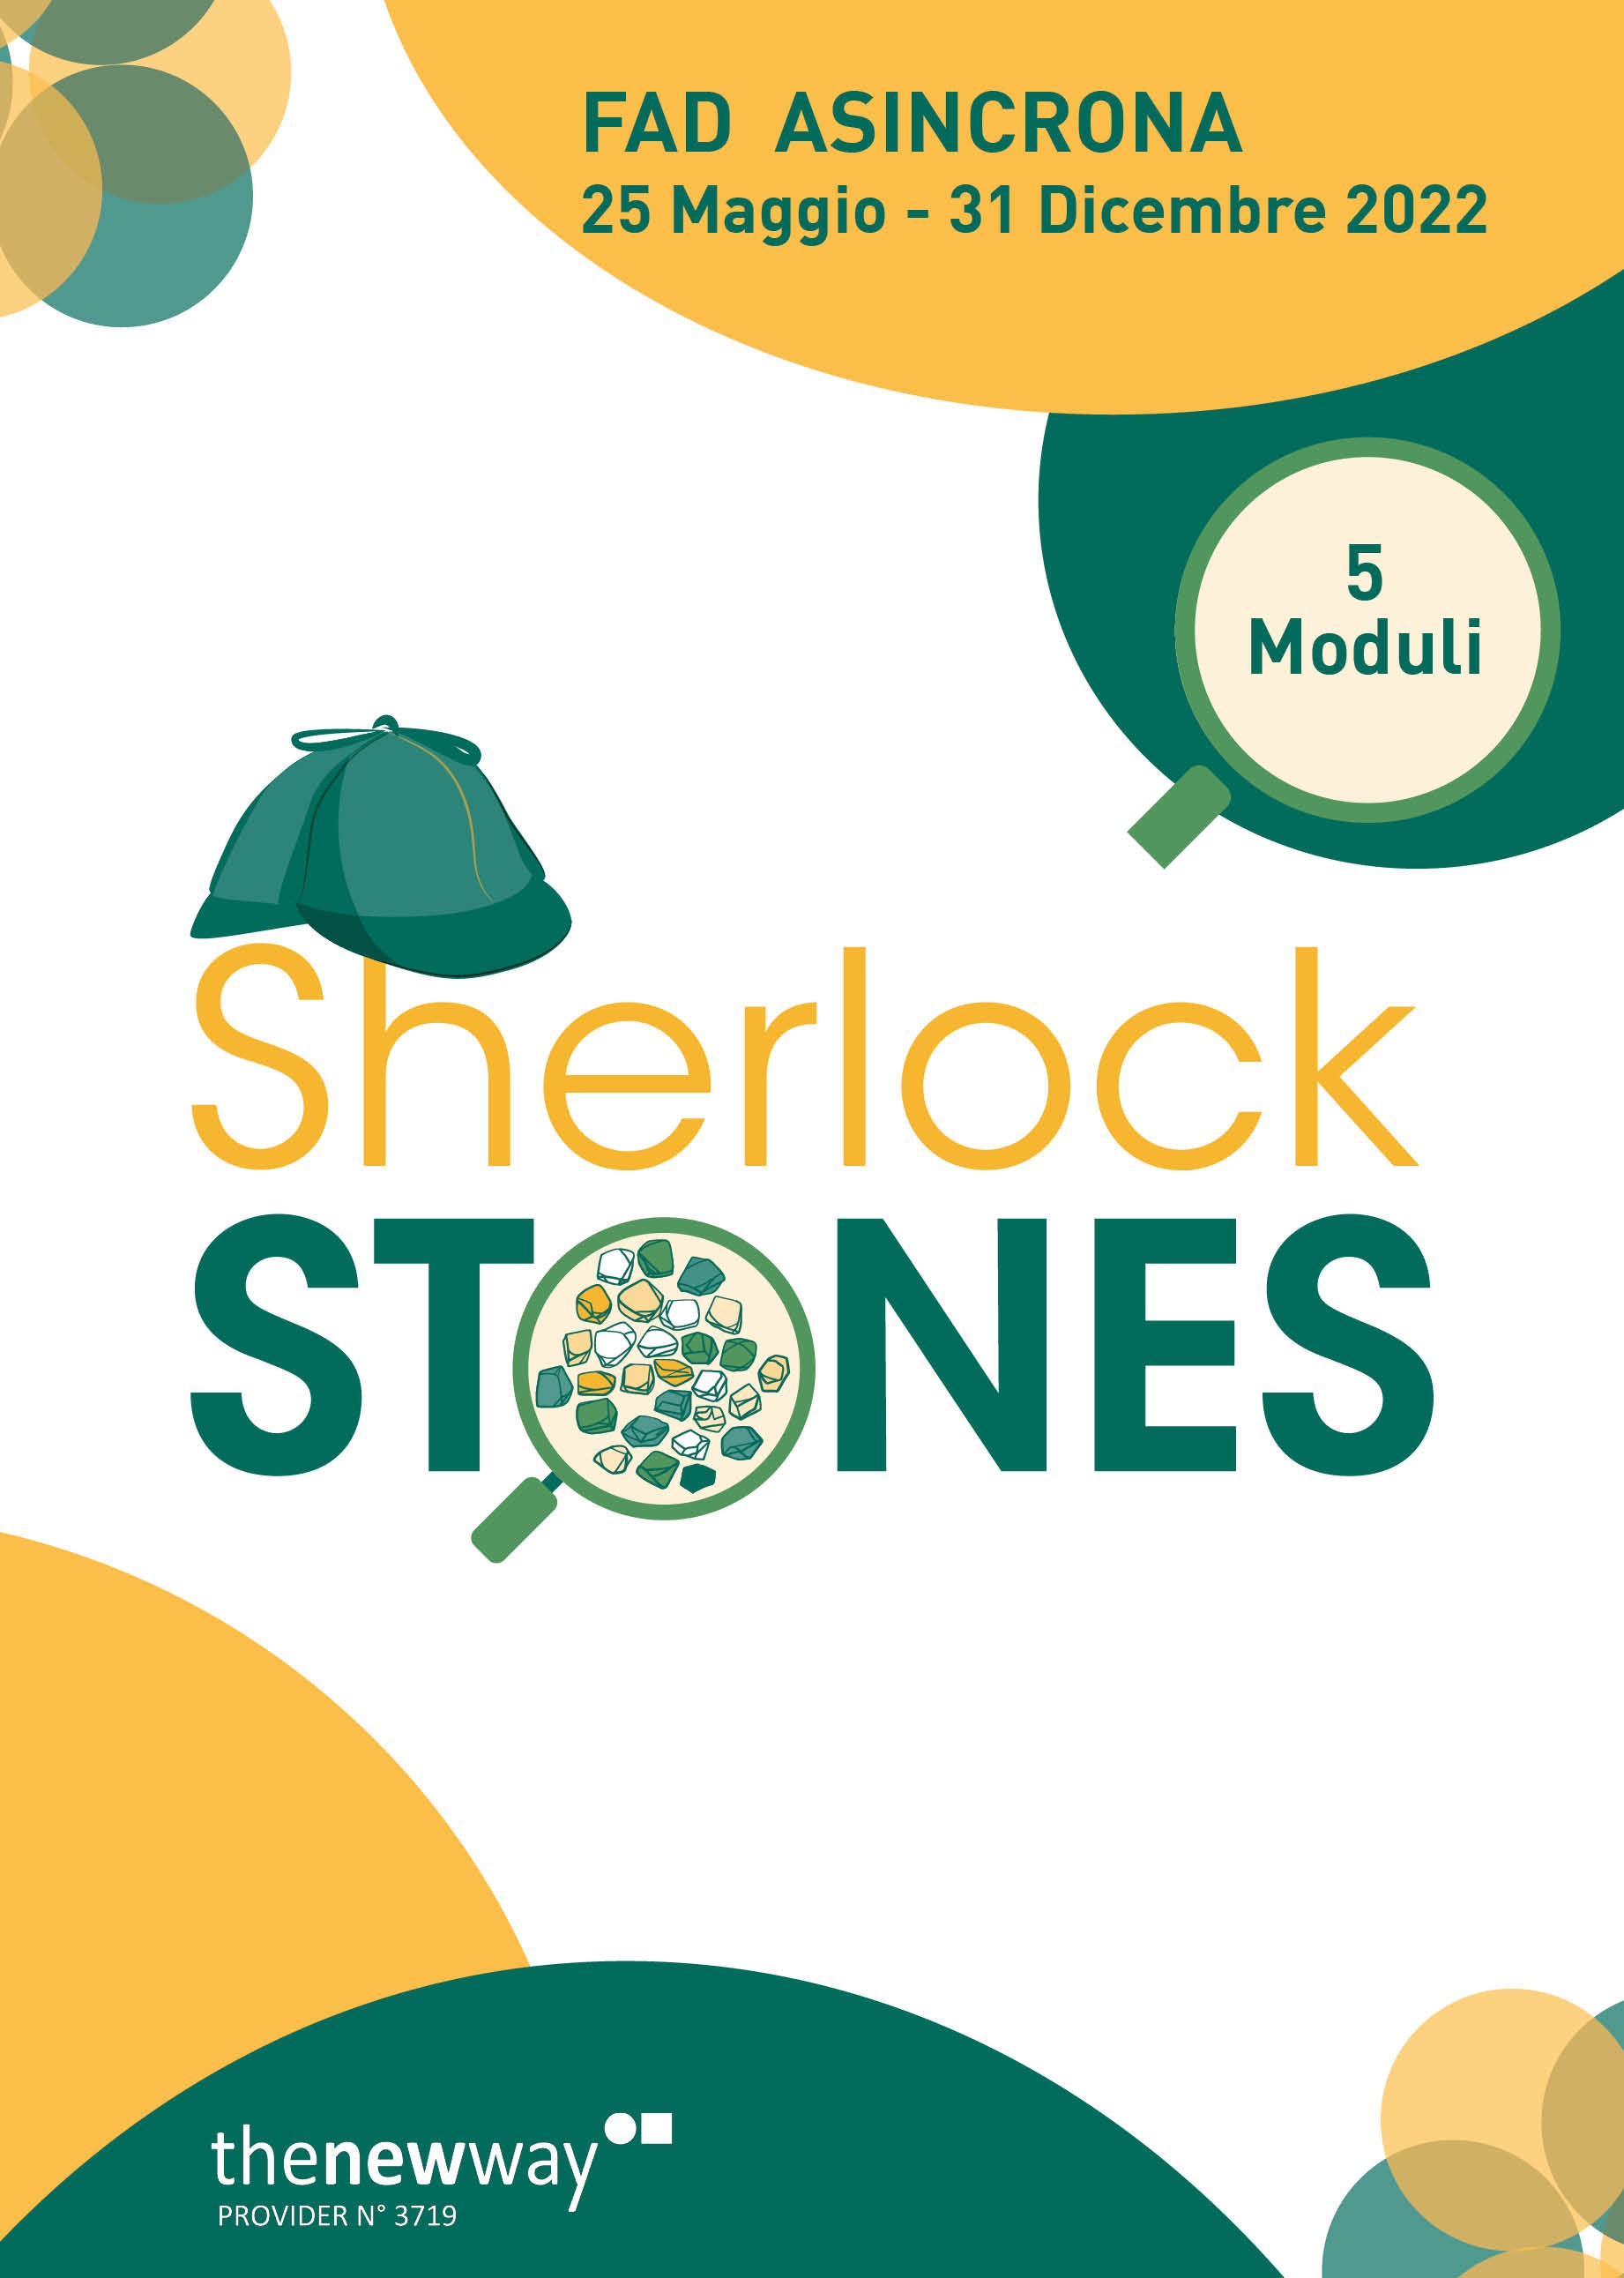 Sherlock Stones - Milano, 25 Maggio 2022